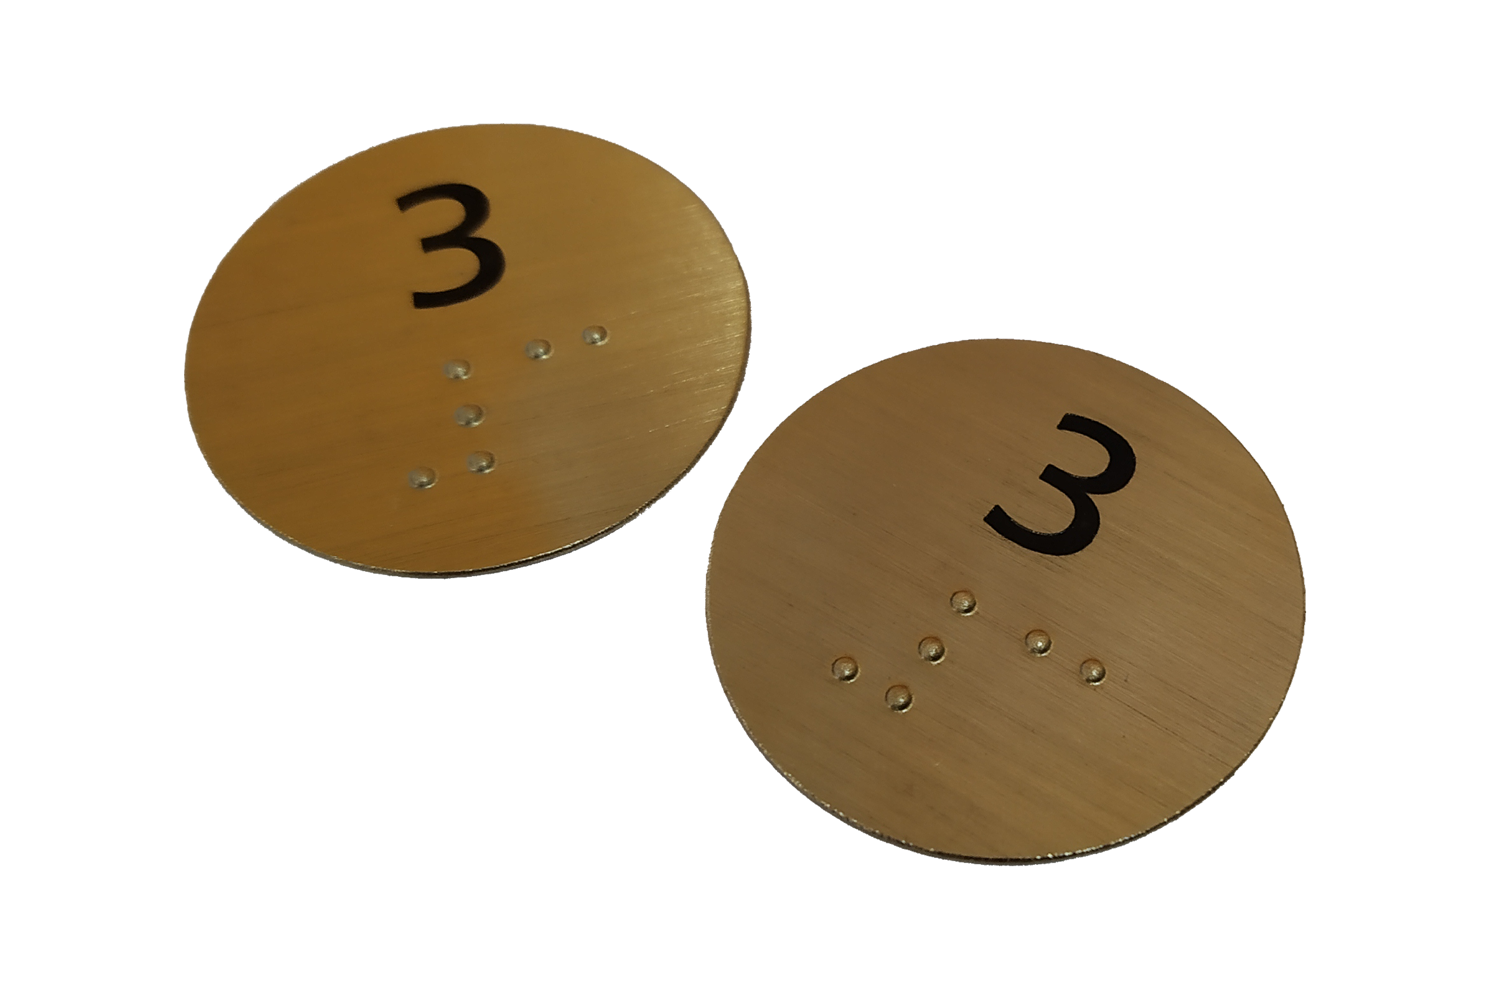 Chapas con impresión y braille para identificación accesible de butacas para auditorios y teatros